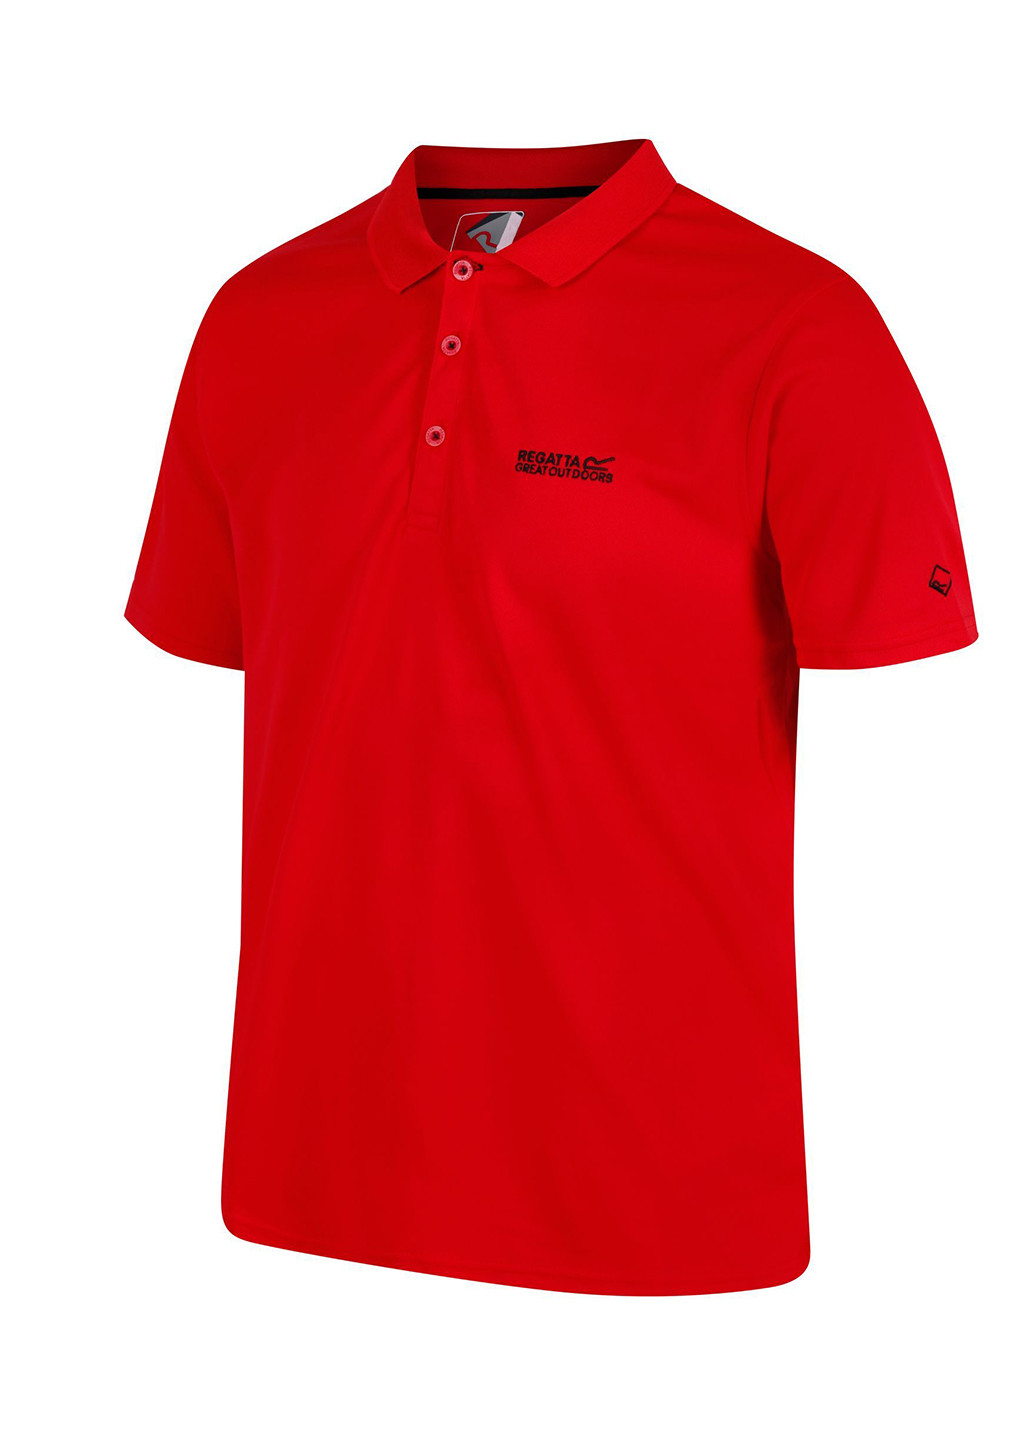 Красная футболка-поло для мужчин Regatta с надписью